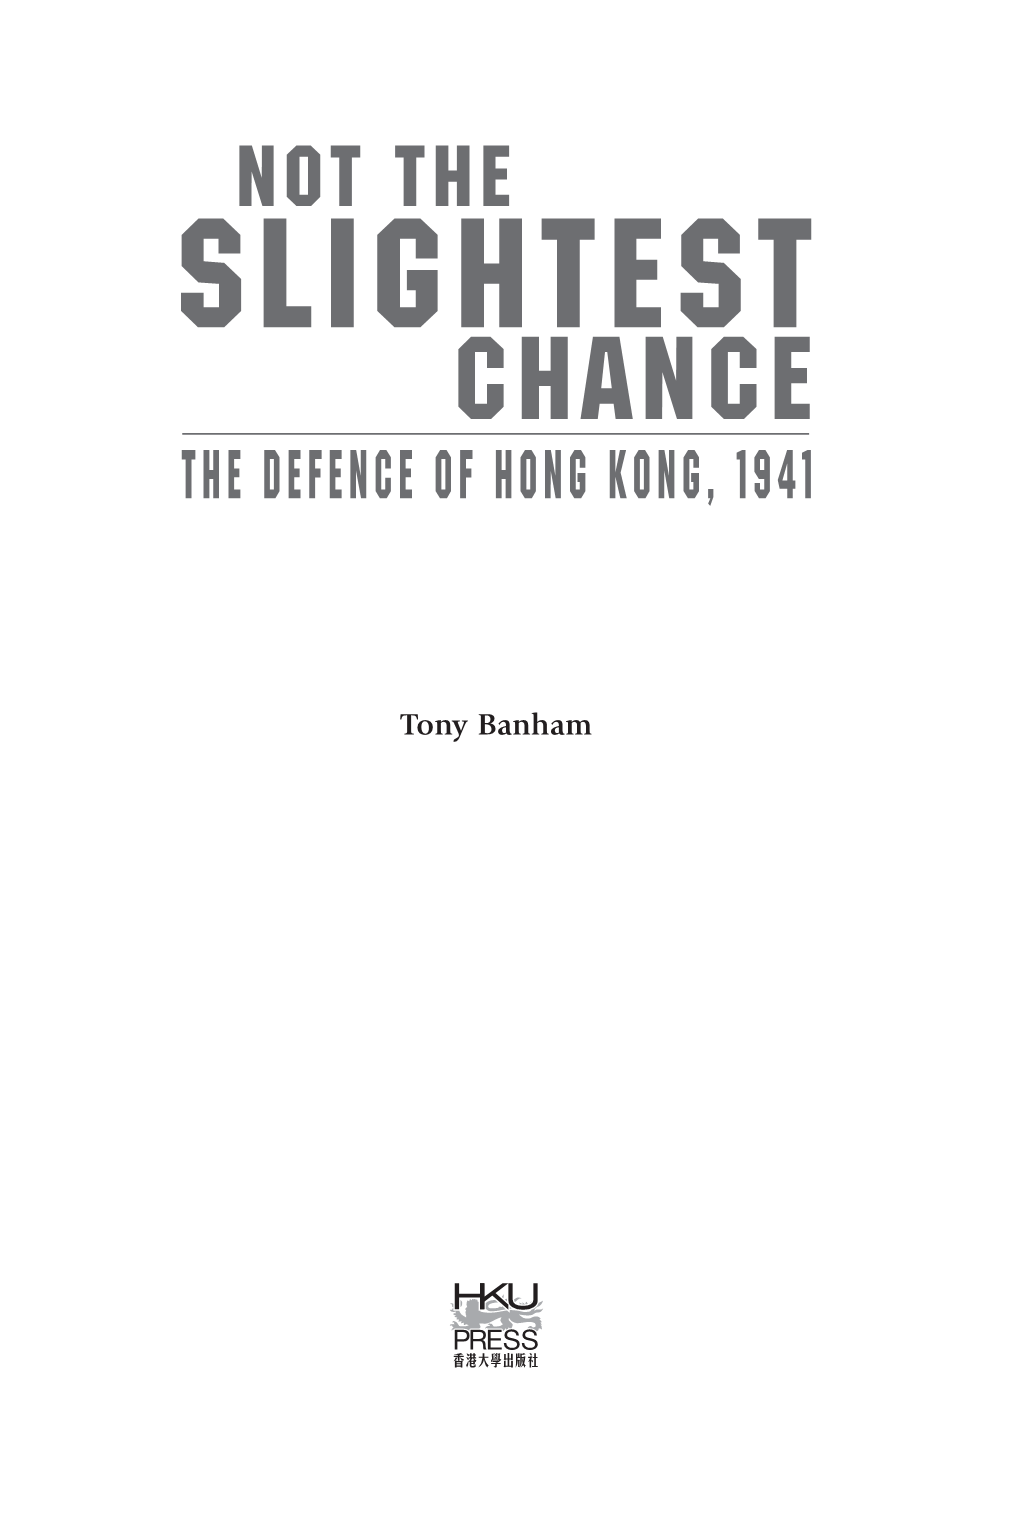 Tony Banham Hong Kong University Press the University of Hong Kong Pokfulam Road Hong Kong